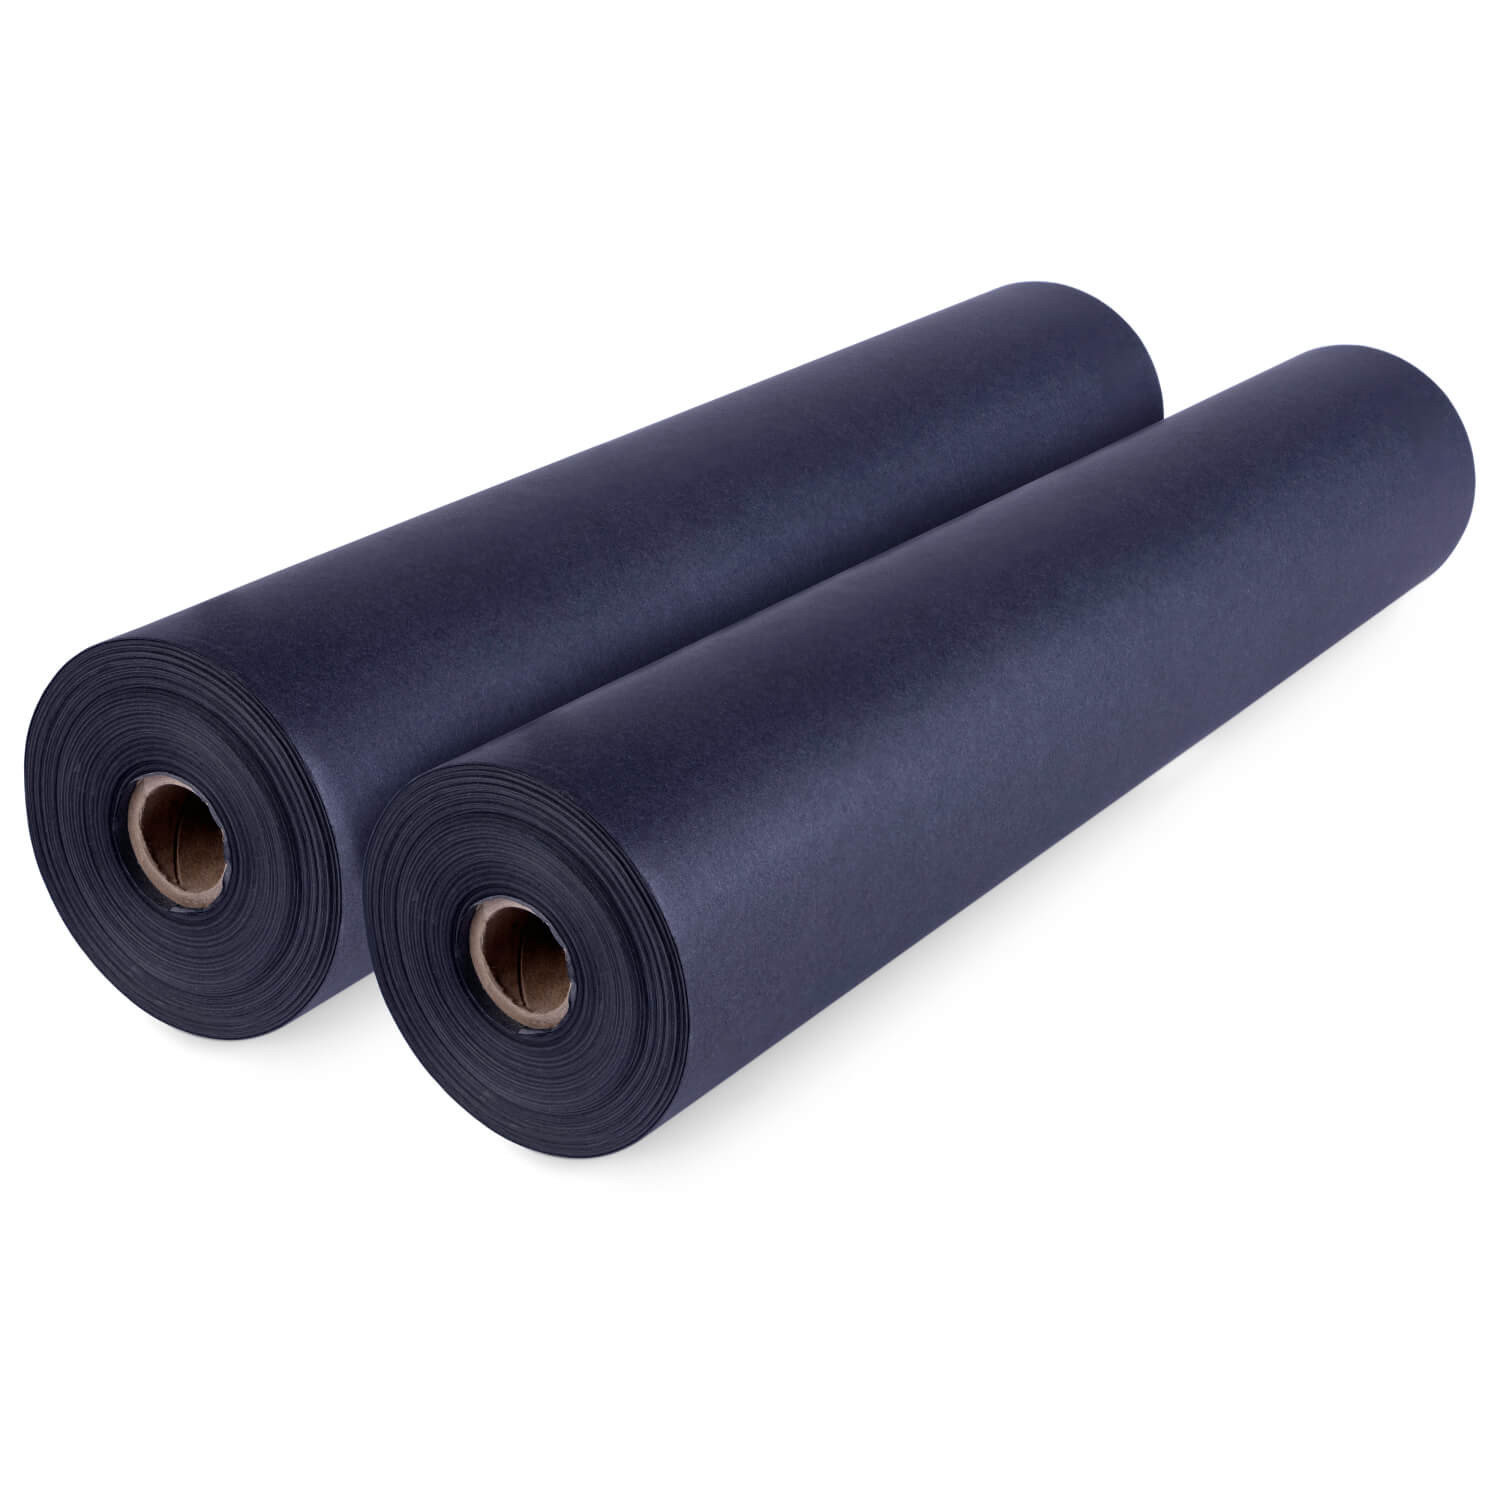 18 x 250' Black Kraft Paper Roll, 30 lbs (1, 2, 4 rolls) buy in